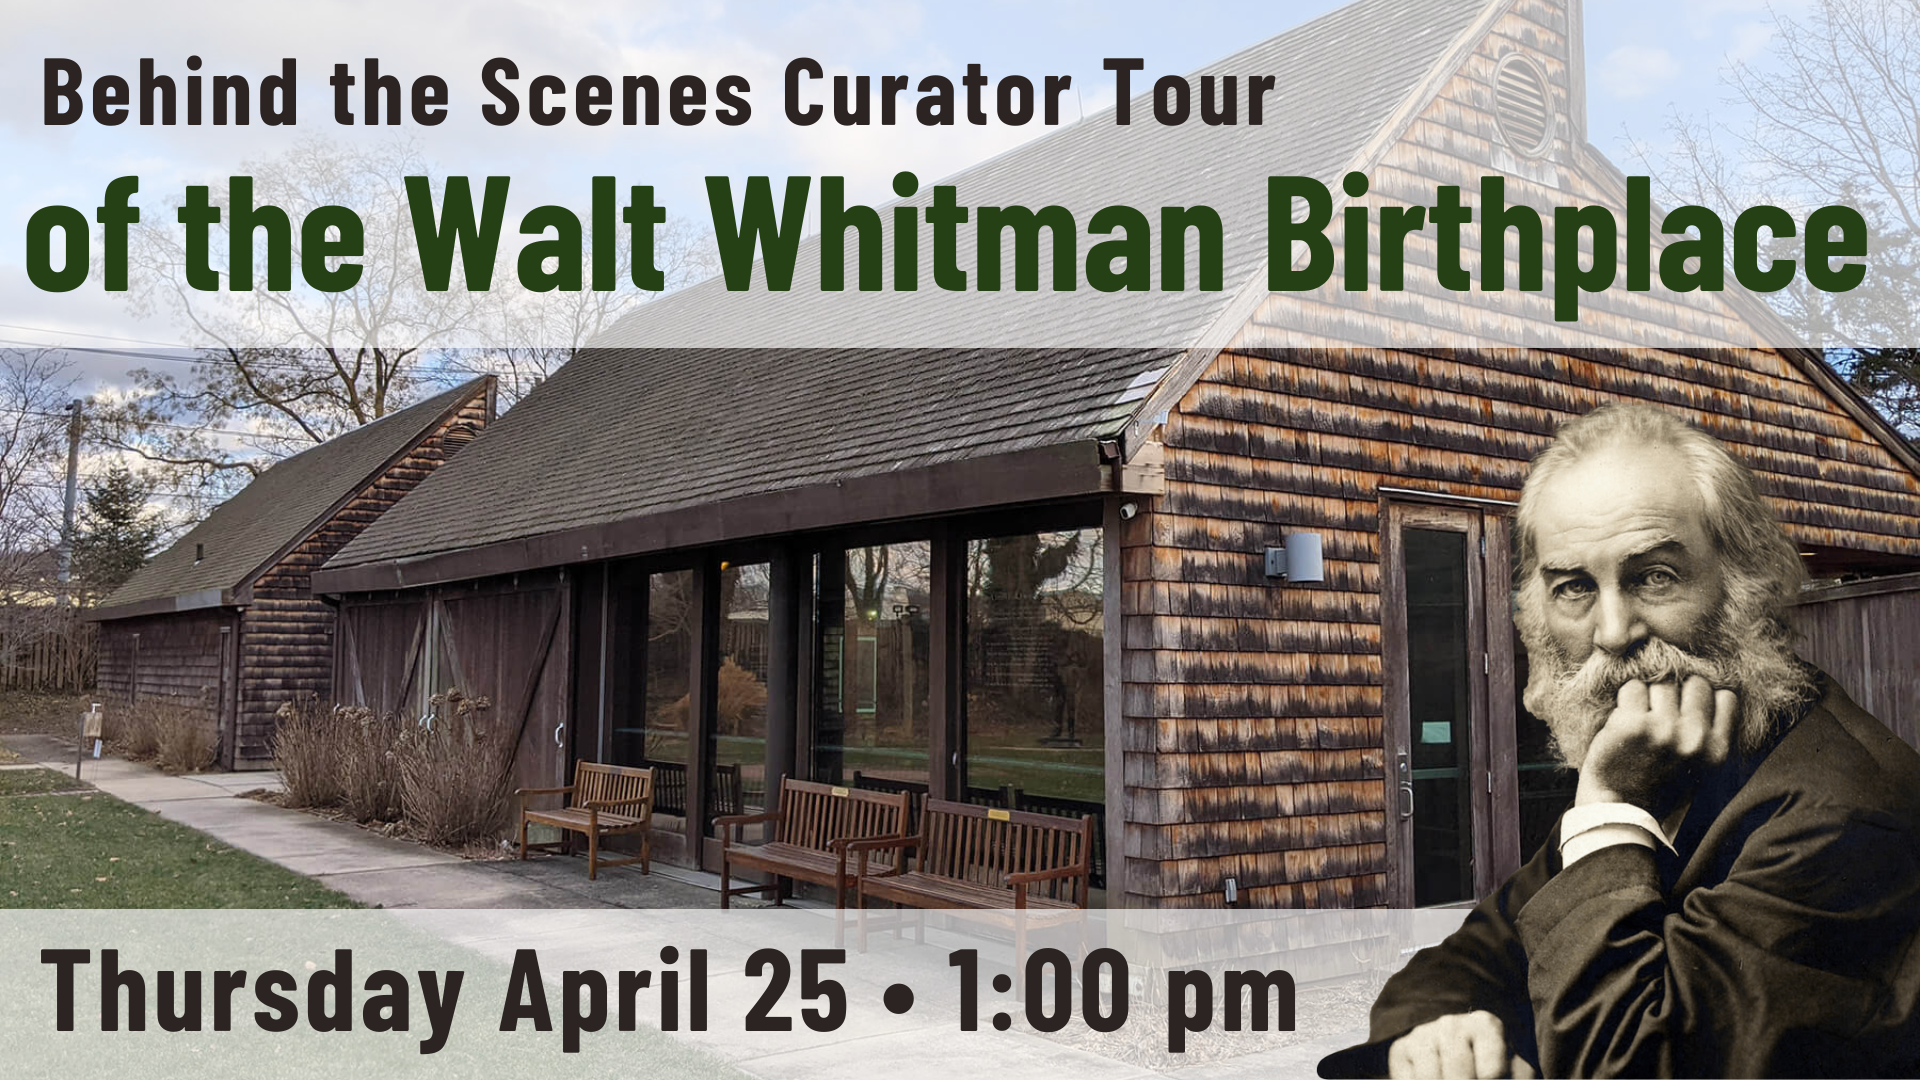 Walt Whitman Birthplace Tour